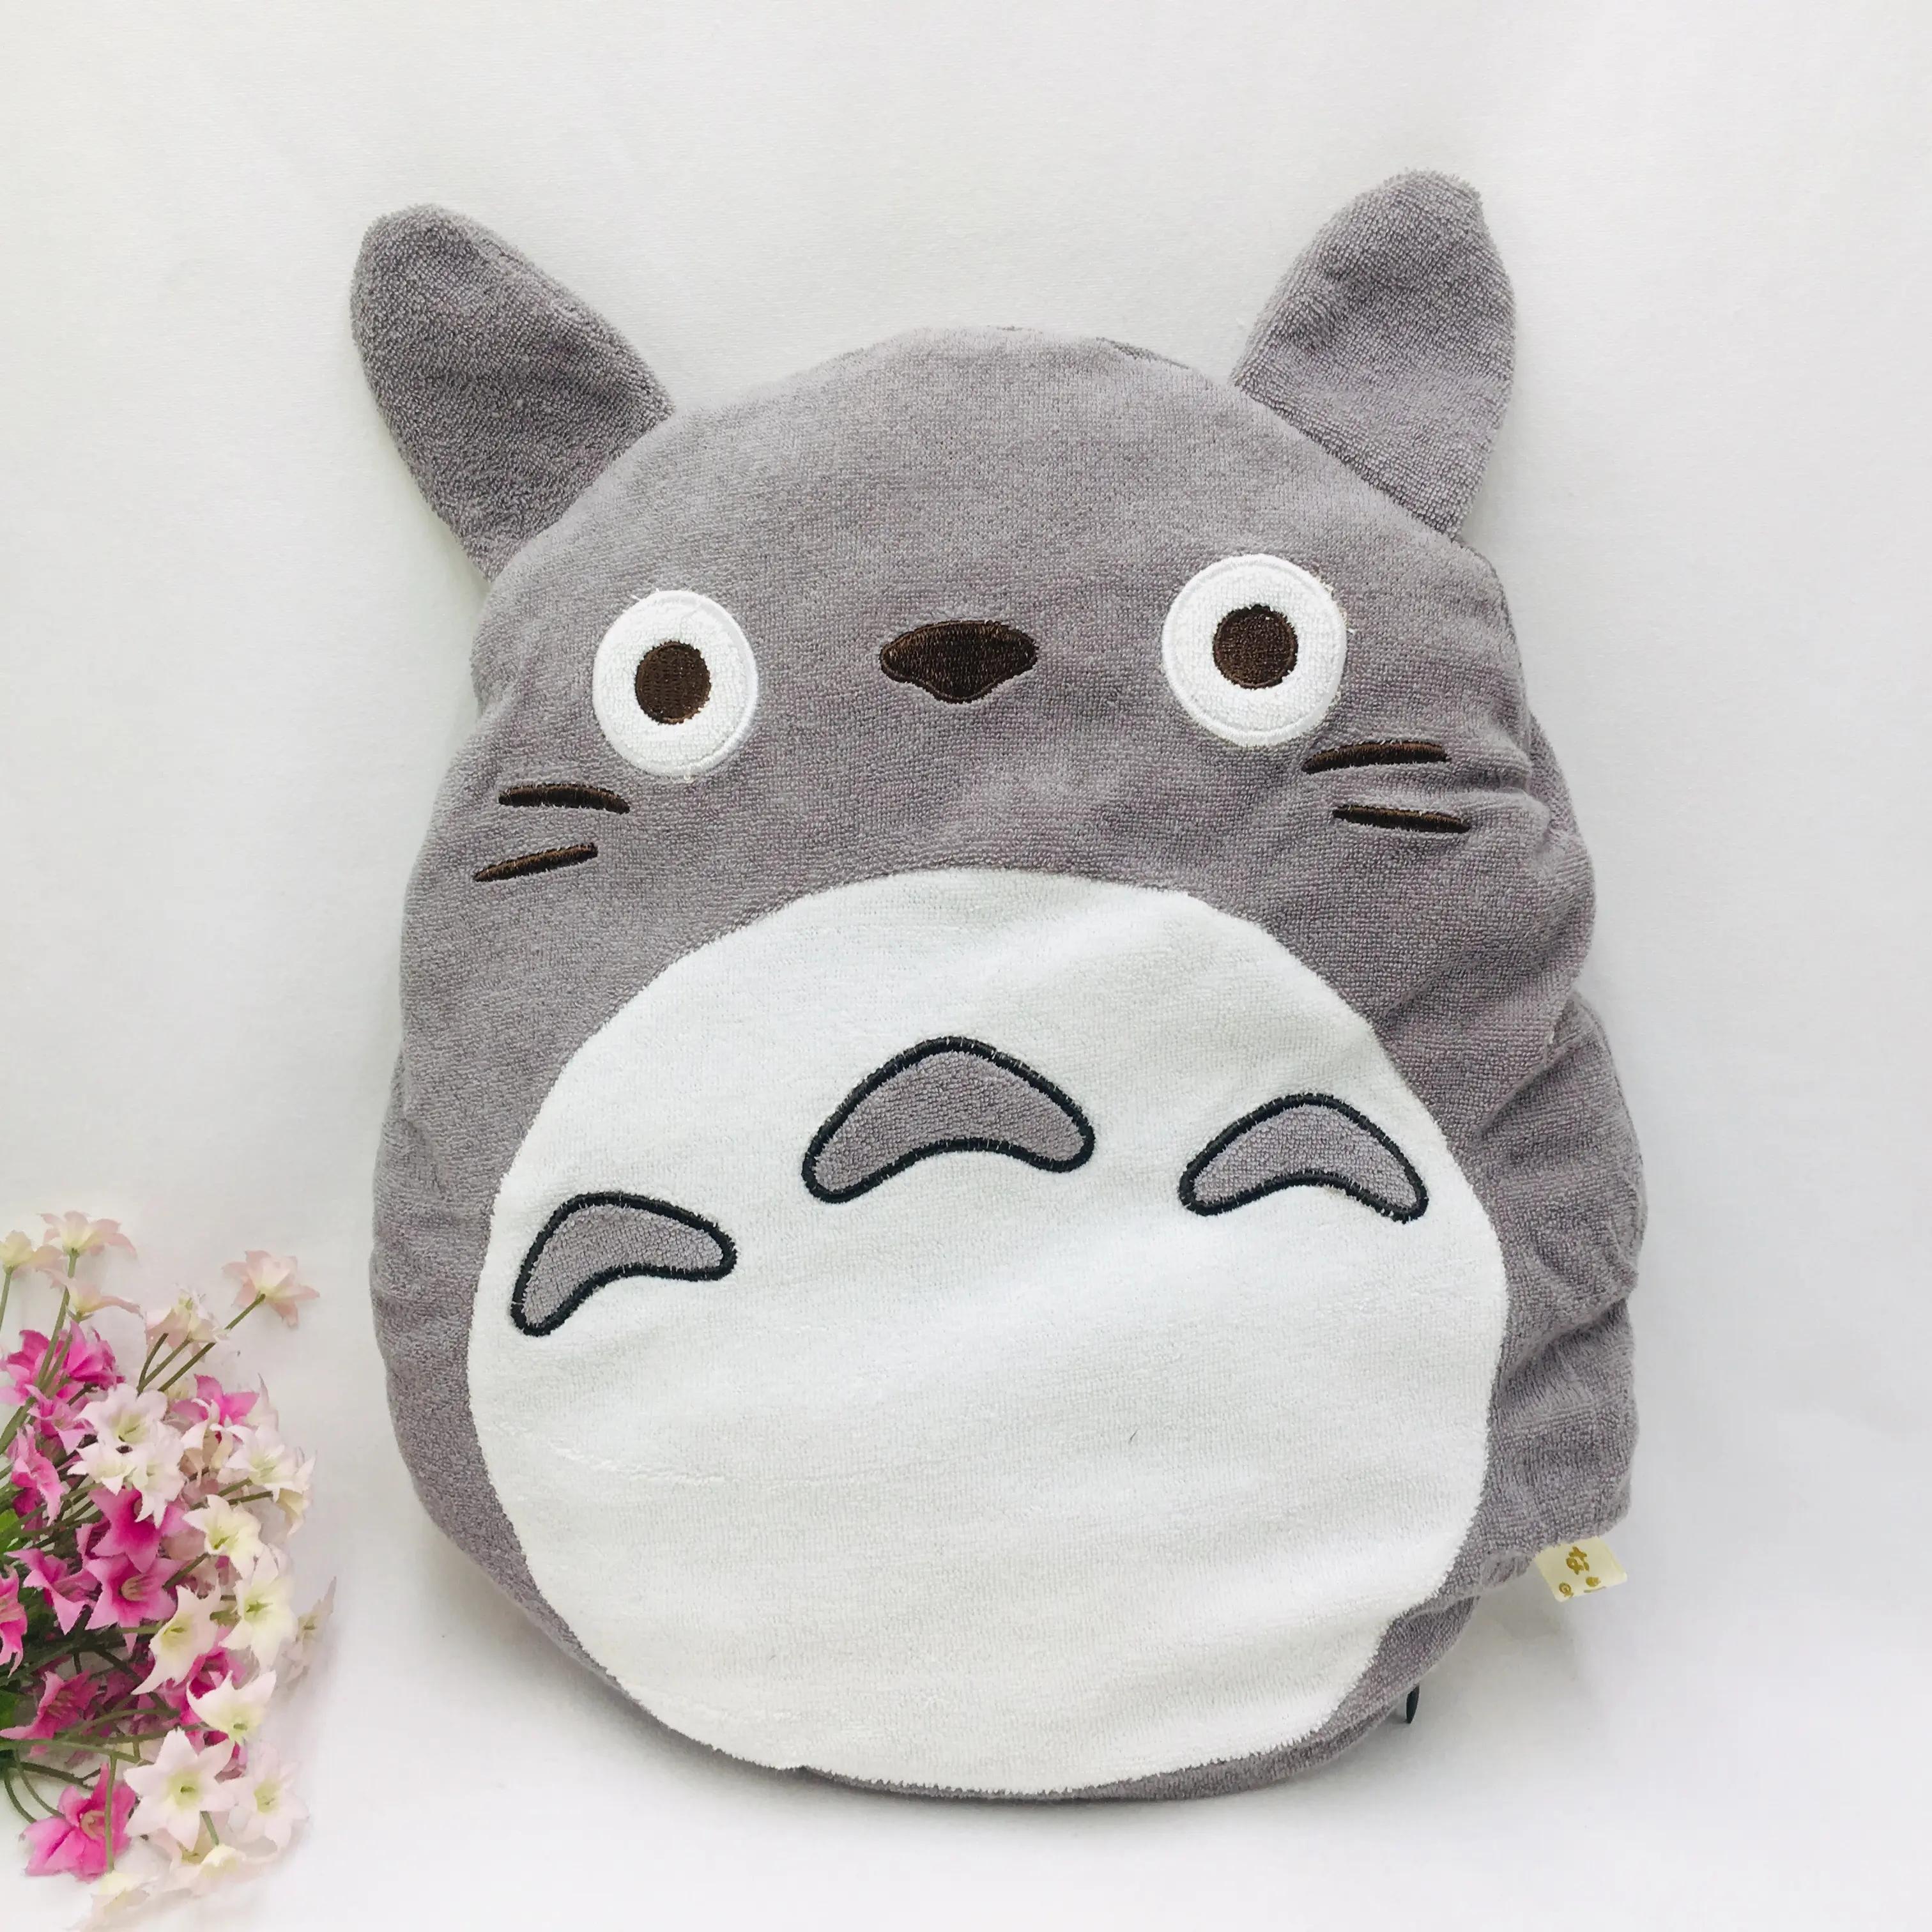 Fabriek Voorraden Groothandel Gevulde Cartoon Totoro Handwarmer Kussen Warme Hand Pluche Dieren Speelgoed Meisjes Geschenken